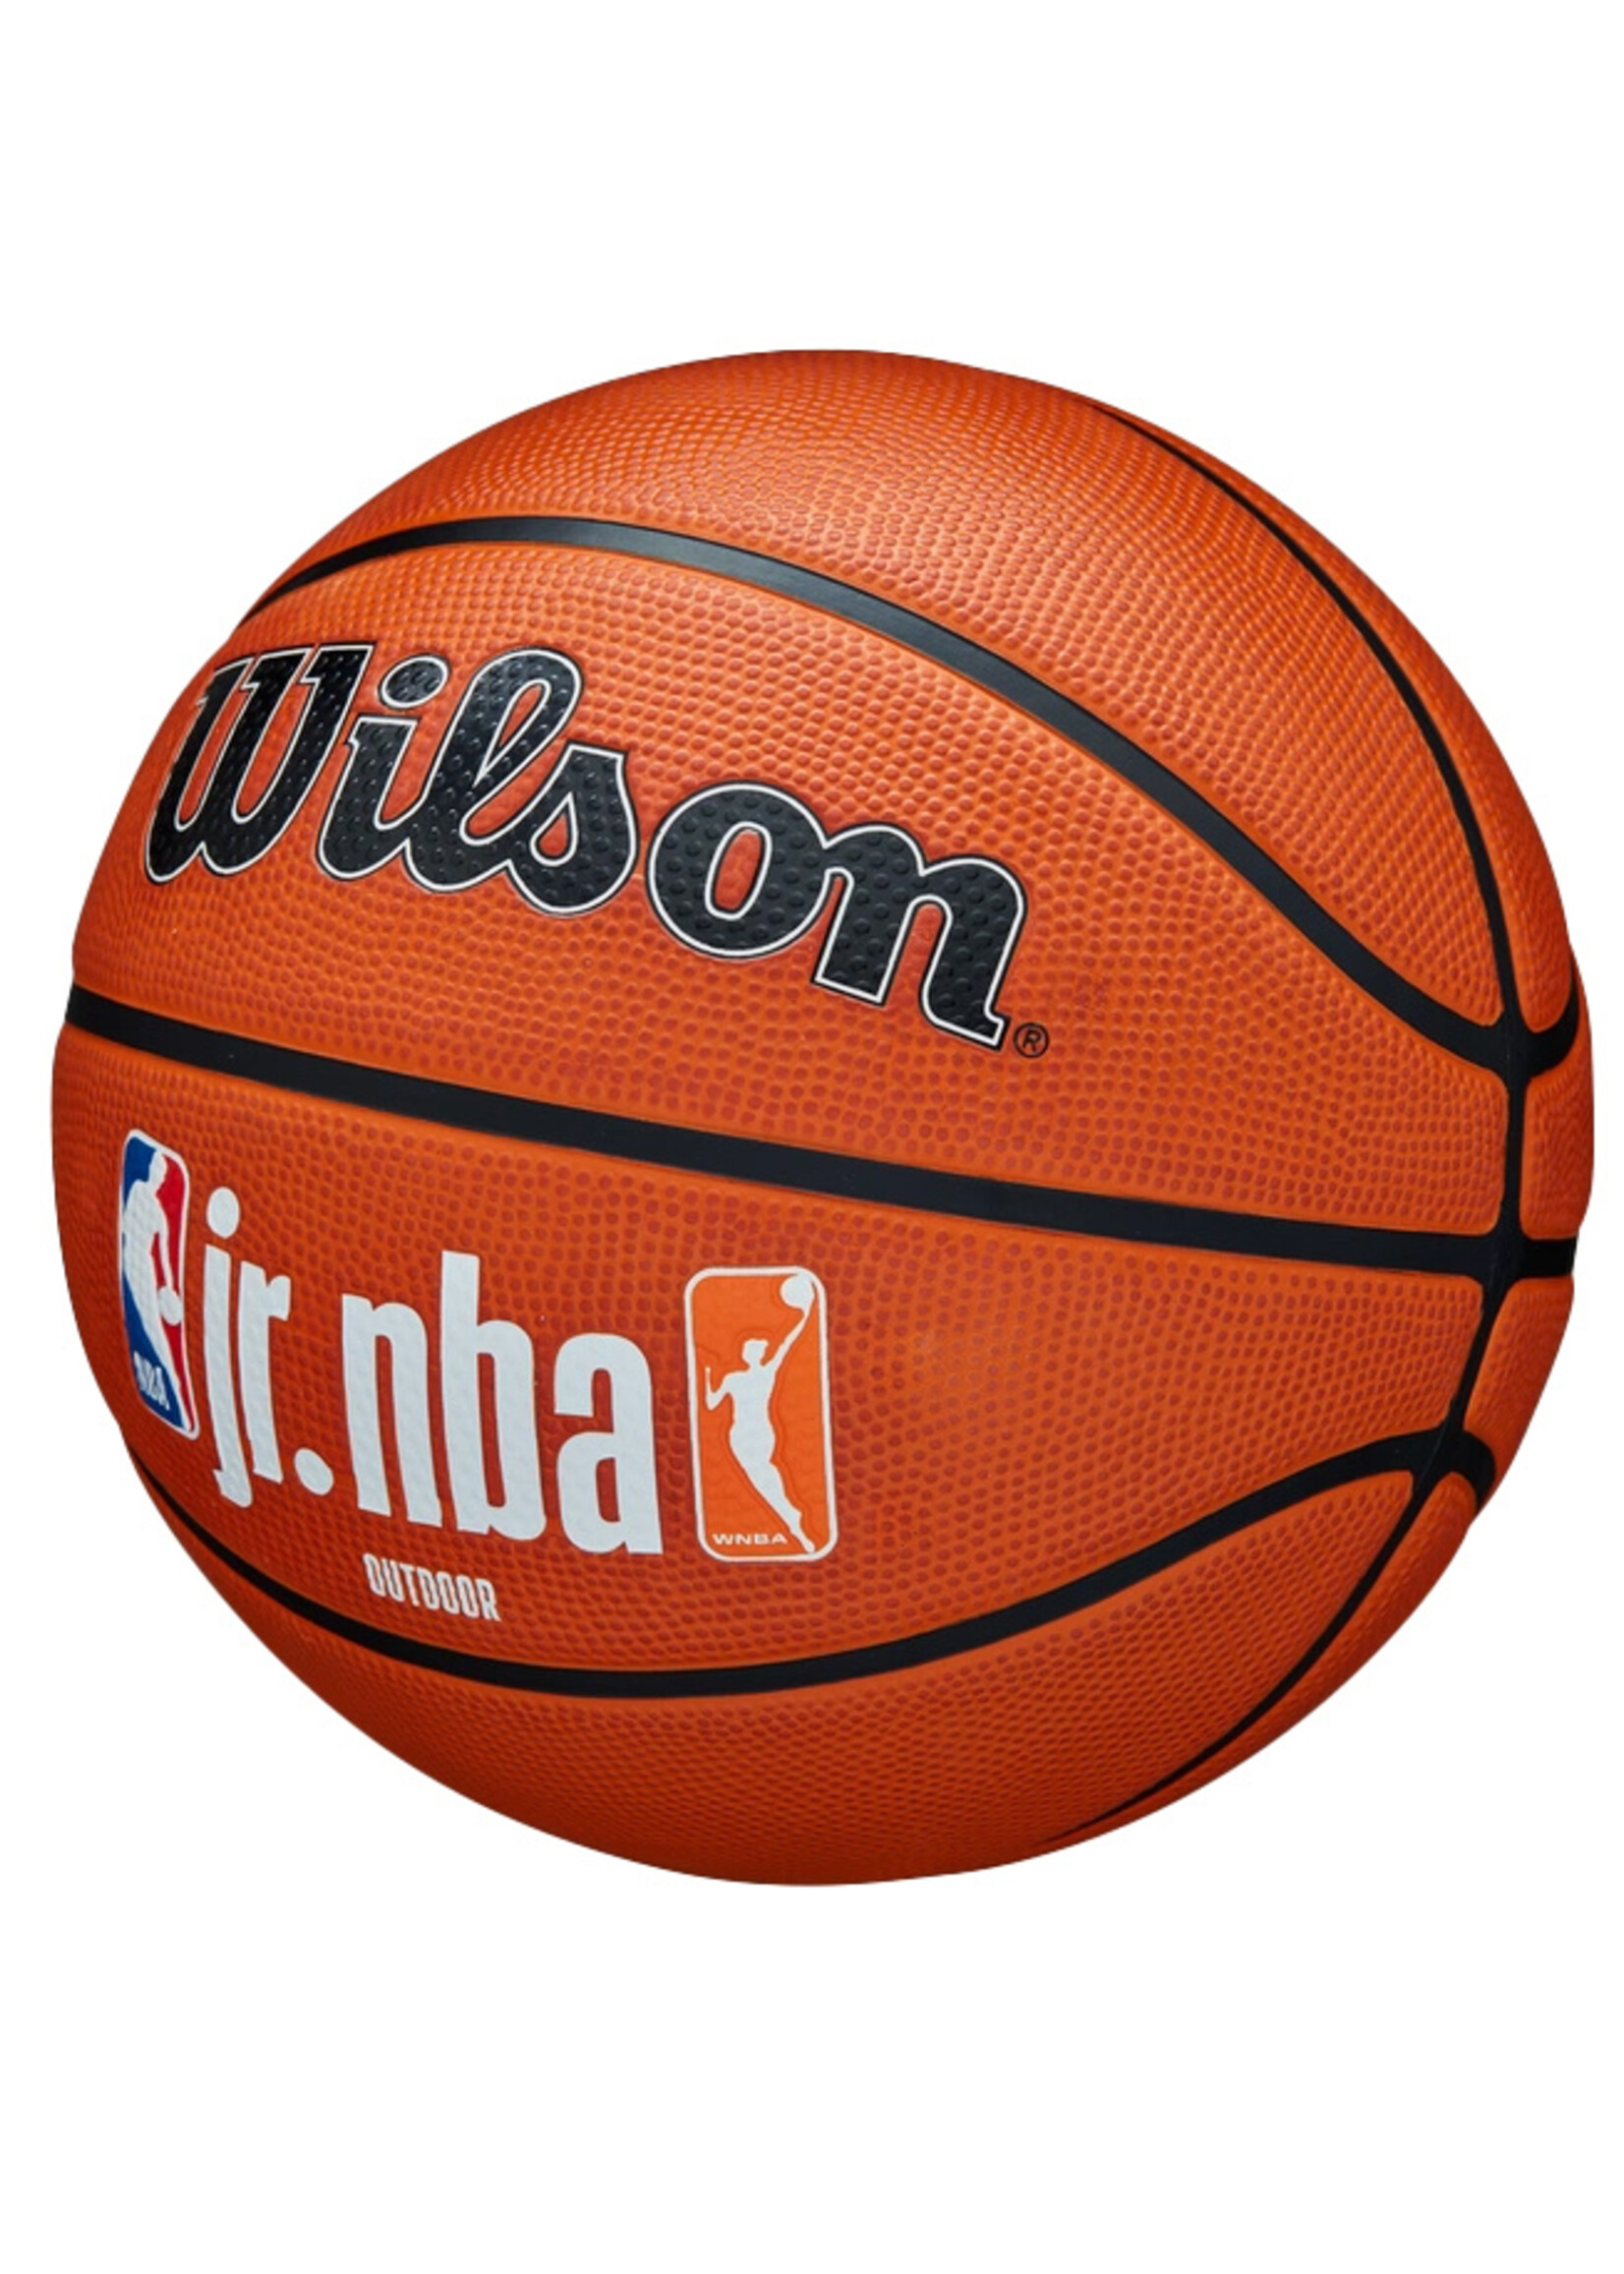 Wilson Wilson Jr.NBA Authentic Series Outdoor